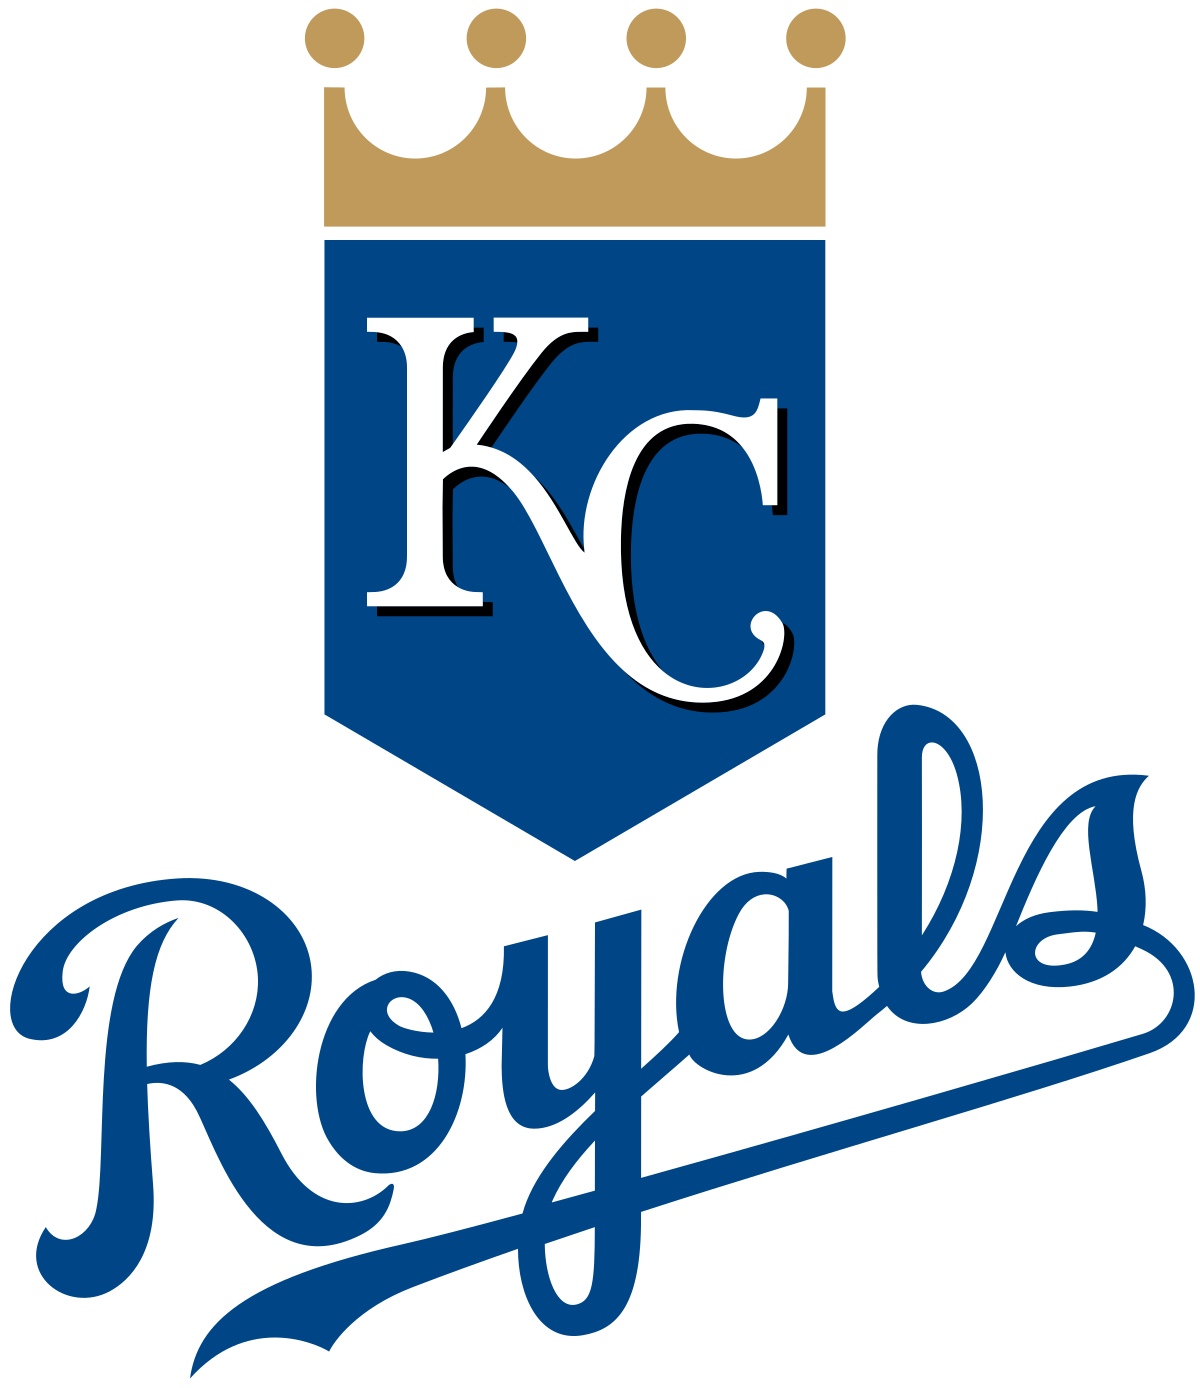 Kansas City Royals 4 Tickets Voucher